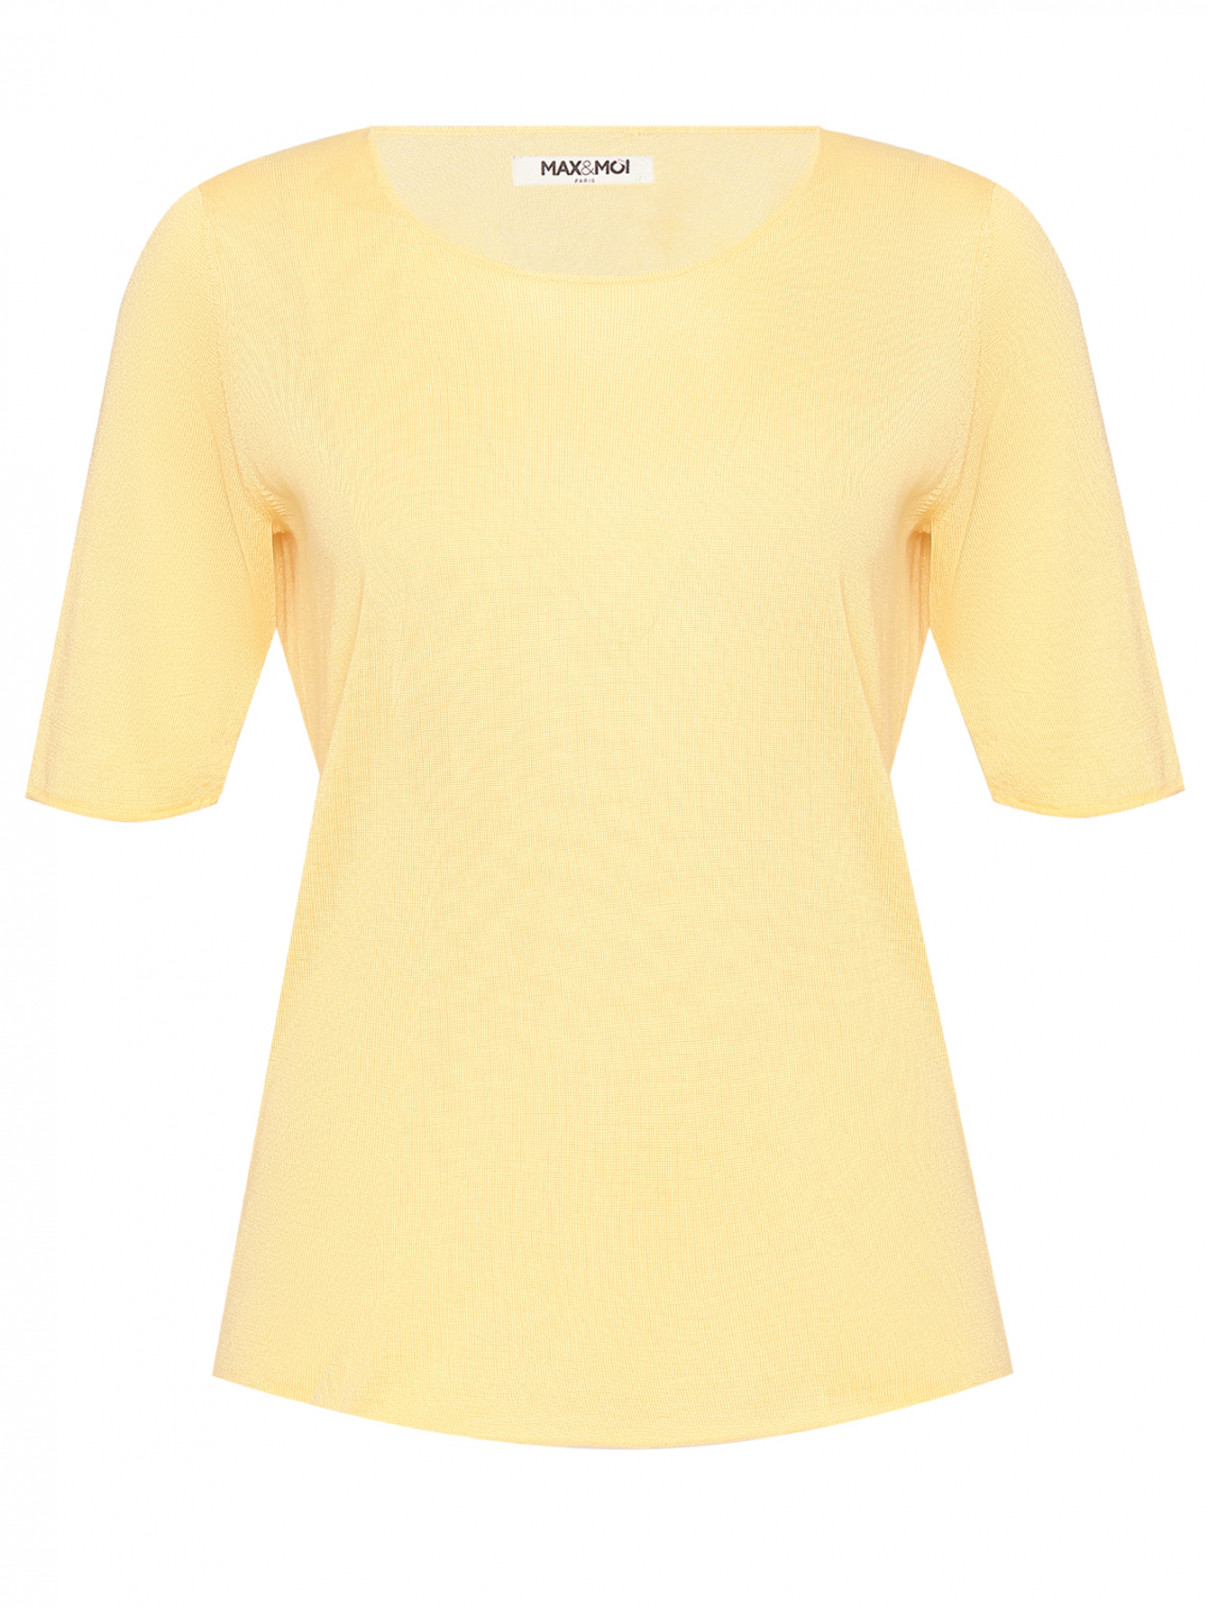 Джемпер из шелка и кашемира с короткими рукавами Max&Moi  –  Общий вид  – Цвет:  Желтый